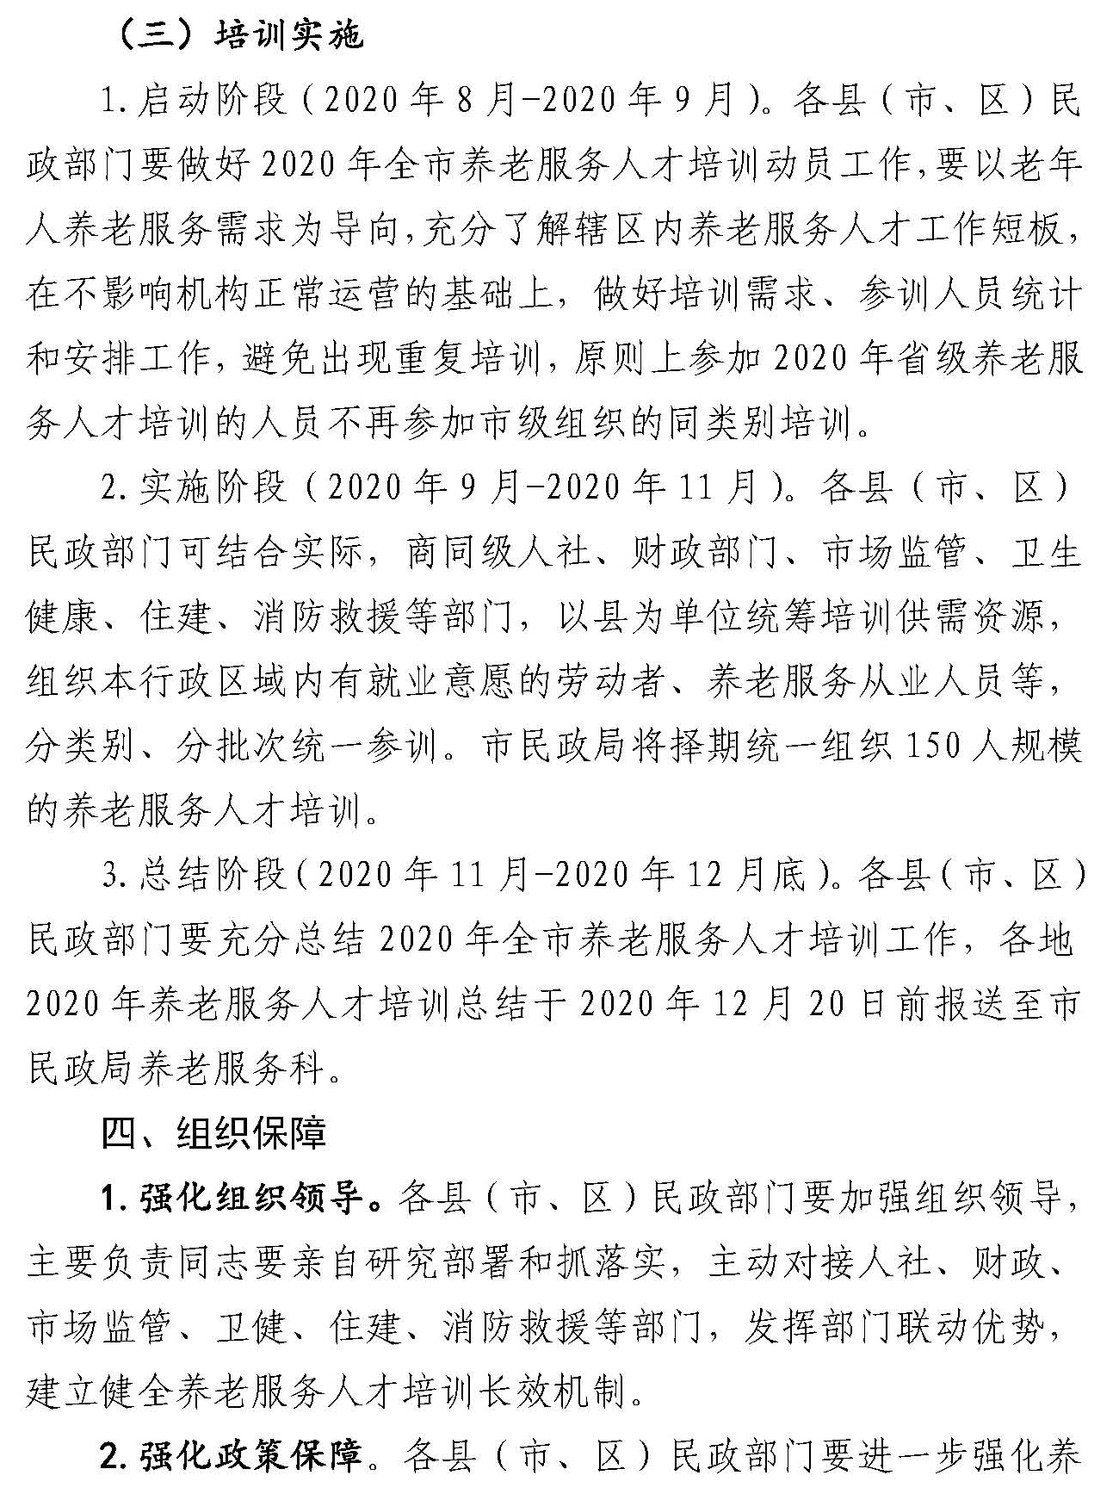 -10 关于开展2020年安庆市养老服务人才培训工作的通知-114_页面_3.jpg